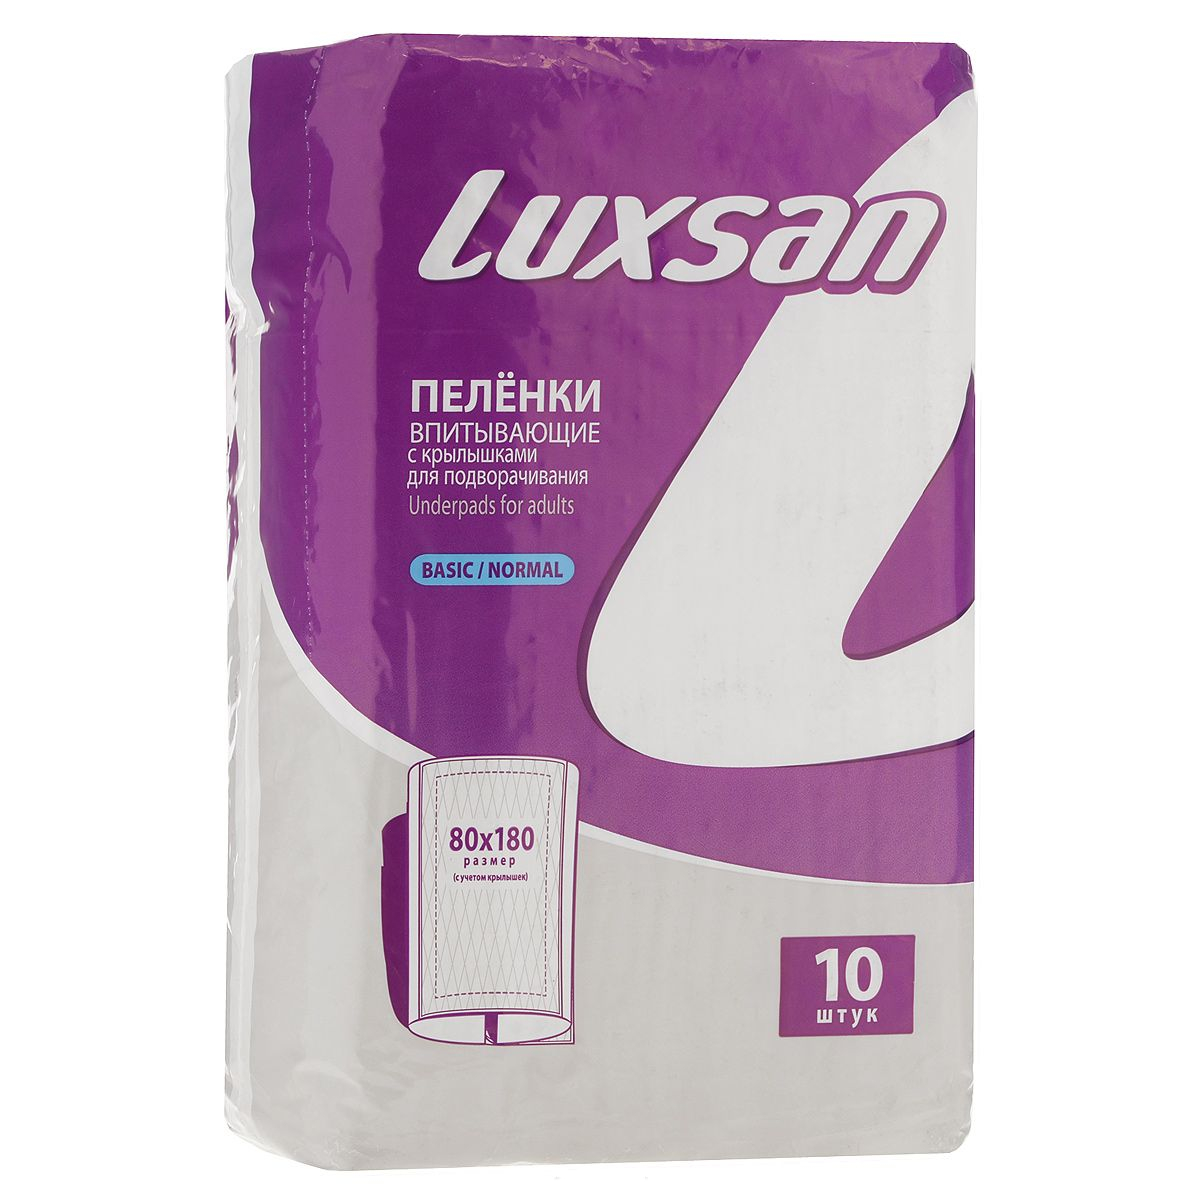 Пеленки впитывающие одноразовые Luxsan Basic/Normal (80 x 180 см) - 10 шт